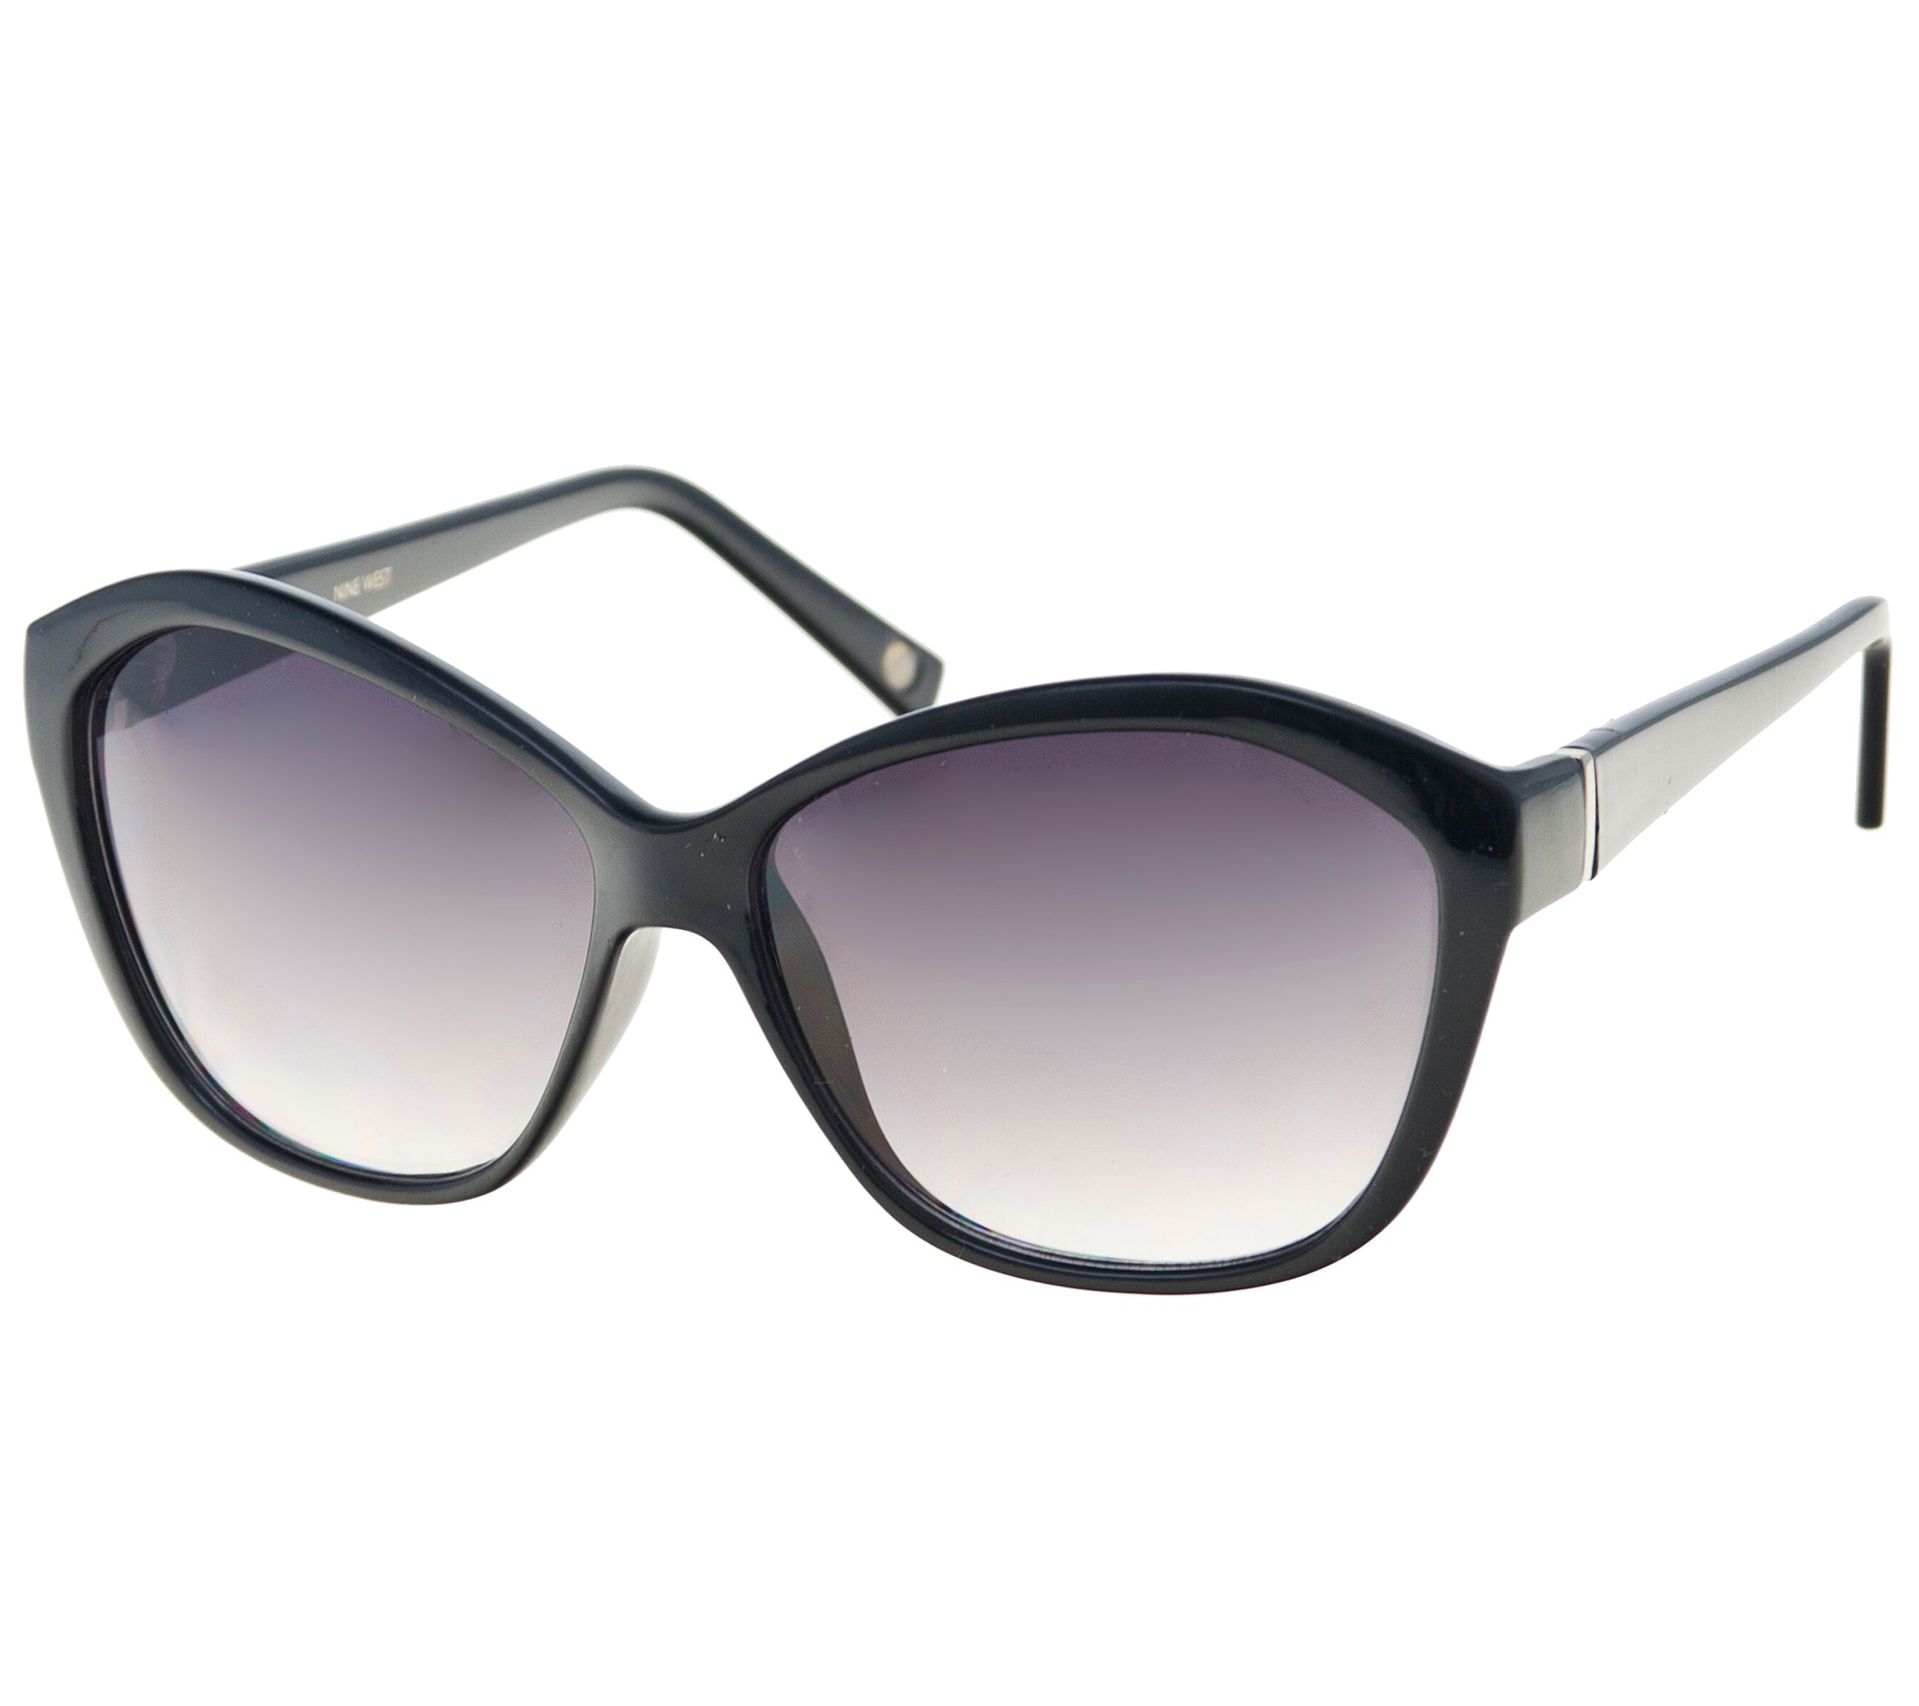 Nine West Black Cateye Sunglasses w/ Soft Storage Case - QVC.com